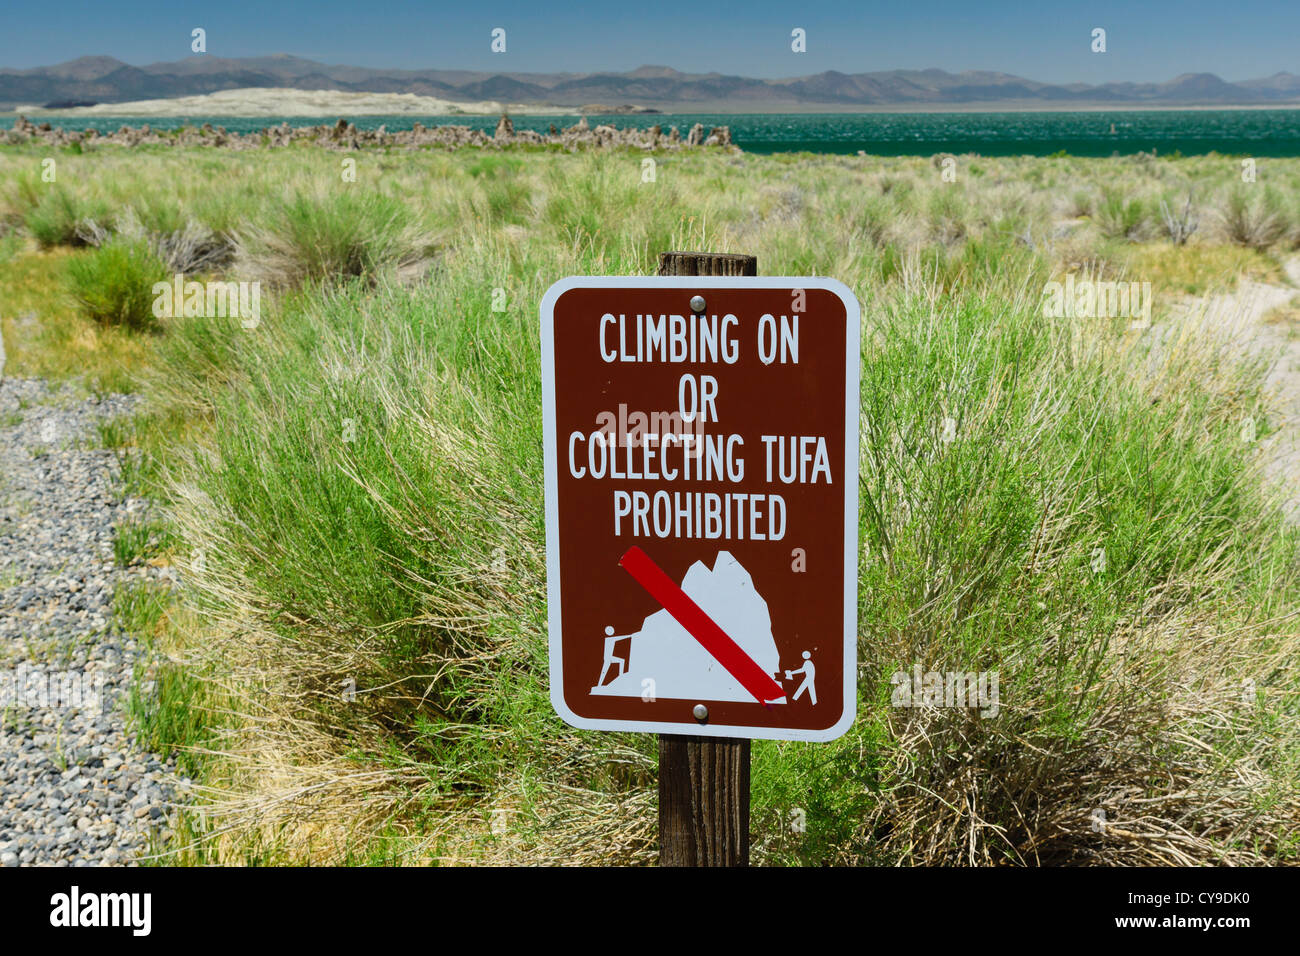 Mono Lake, South Tufa. Melden Sie sich Wanderer in fragile Umwelt zu stoppen. Klettern auf oder sammeln Tufe verboten Schild. Stockfoto